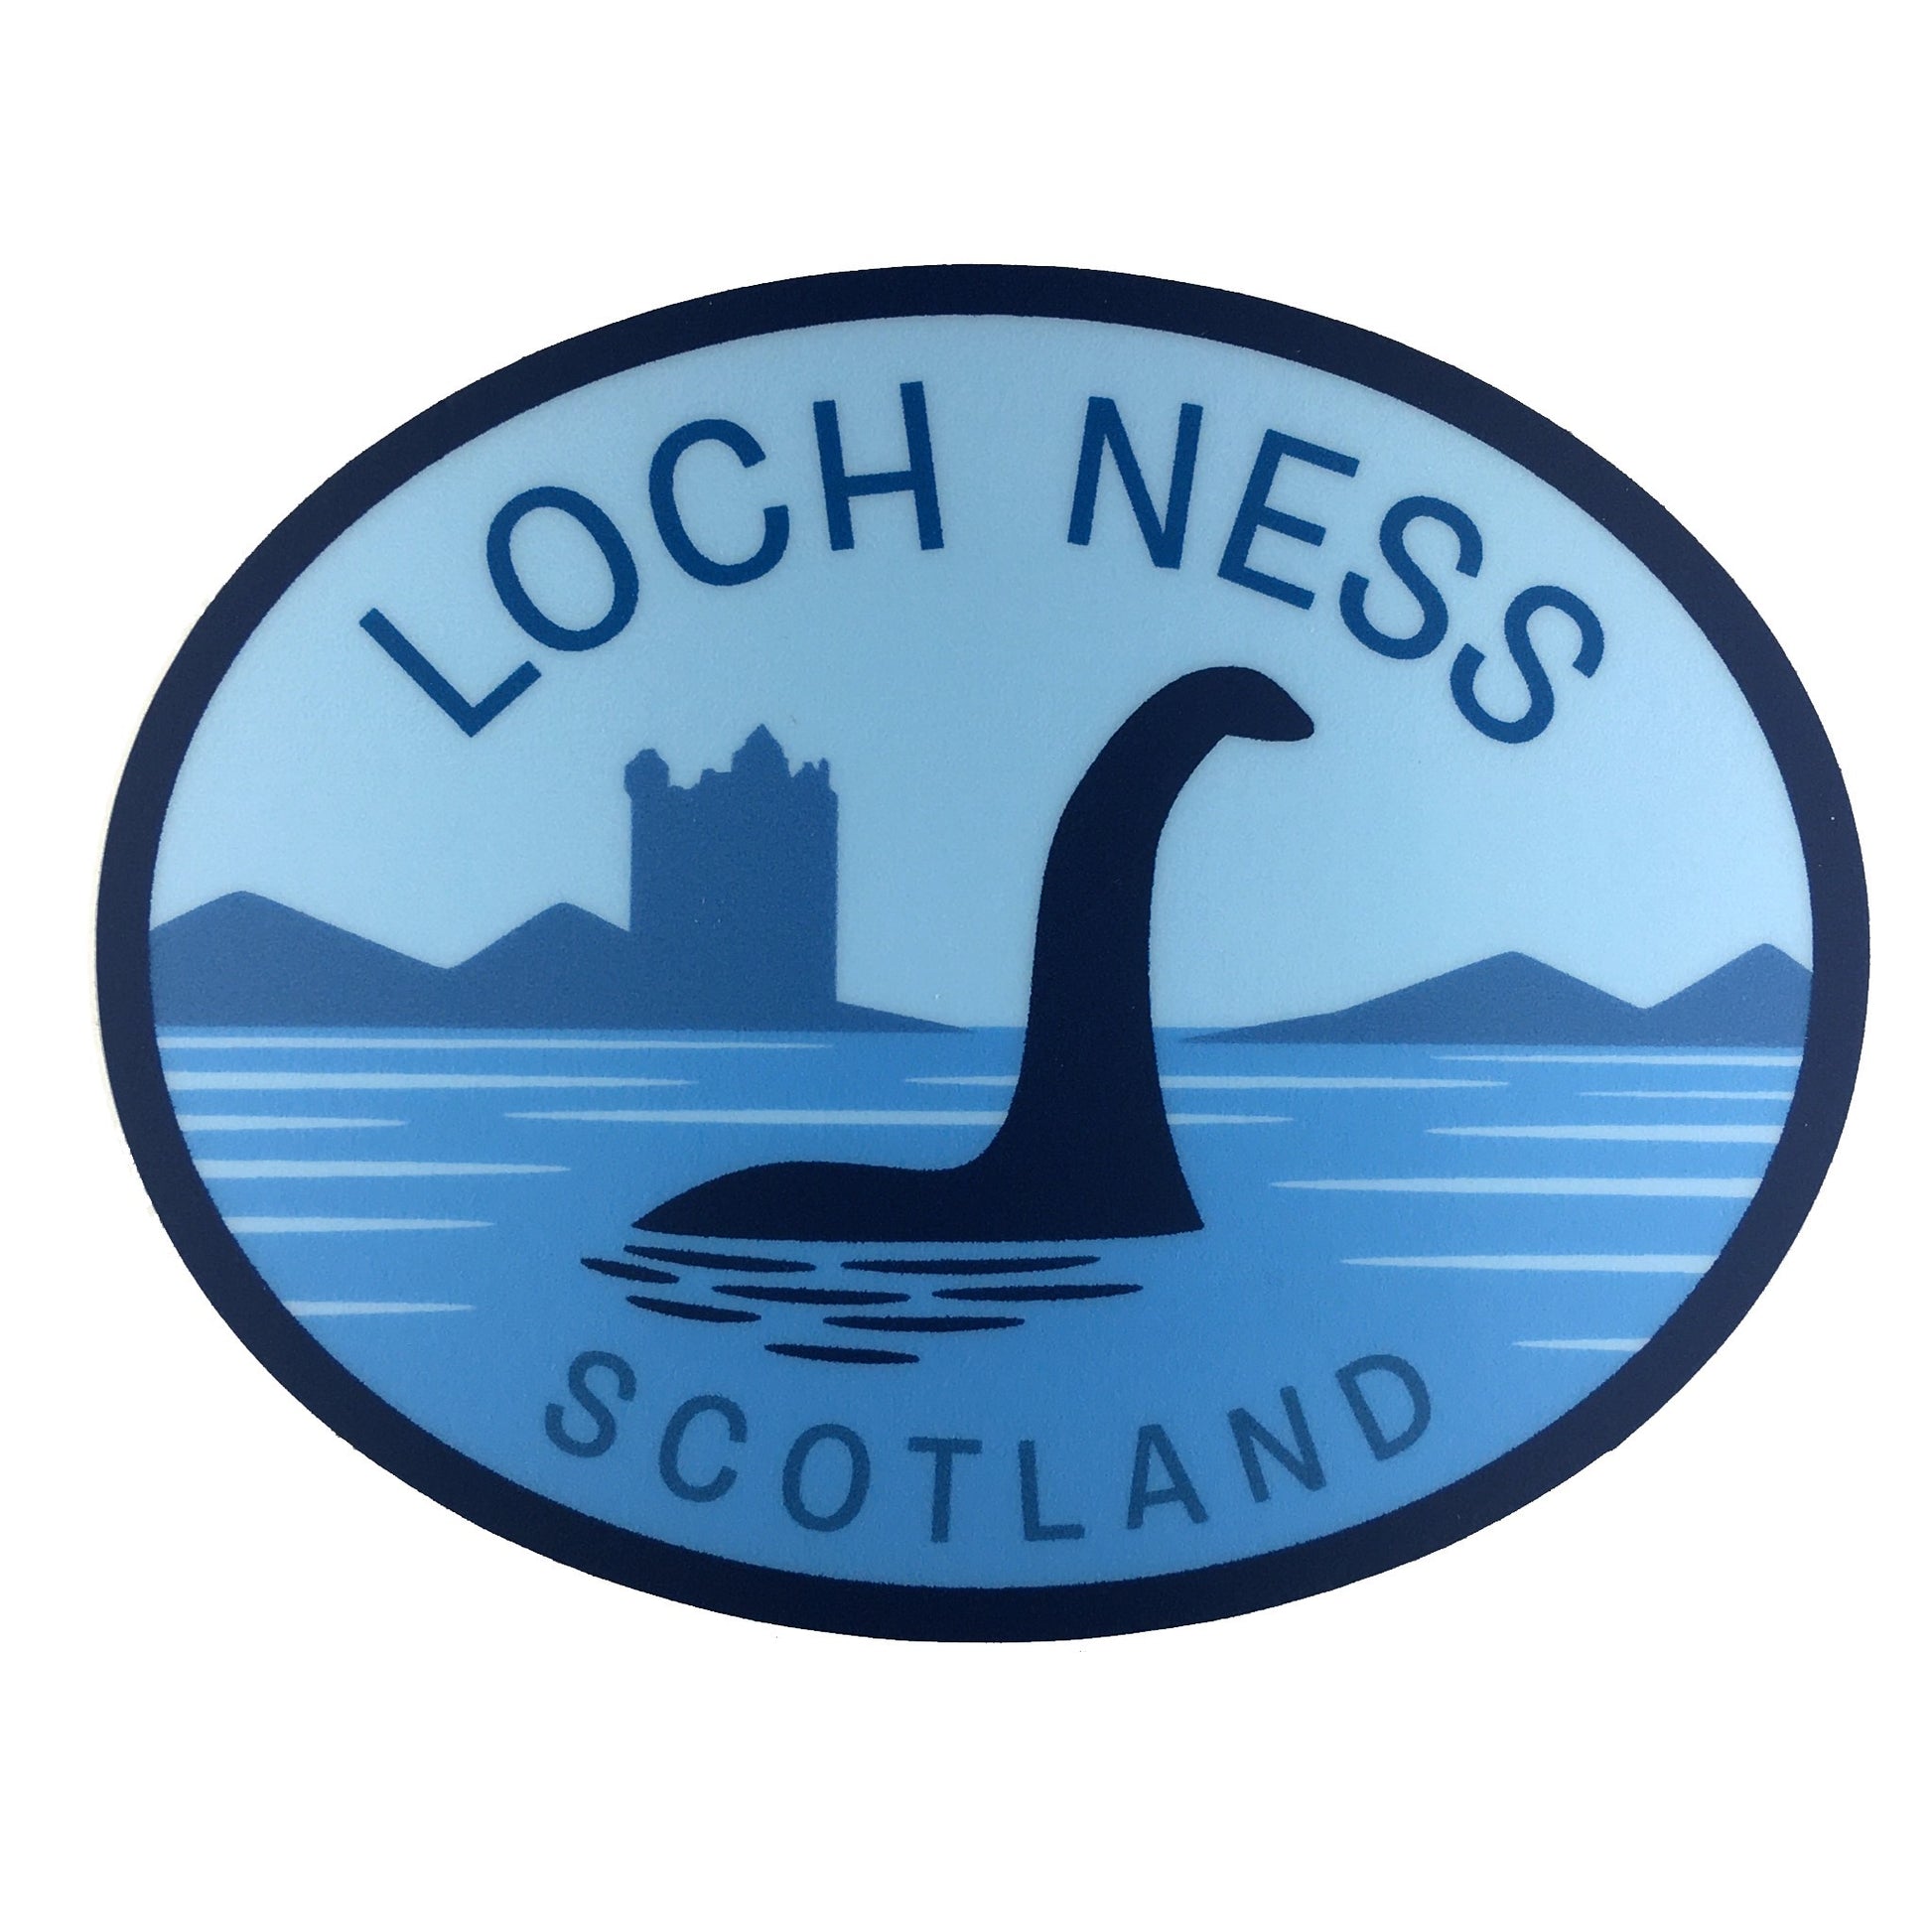 Loch Ness, Scotland Nessie travel sticker by Monsterologist